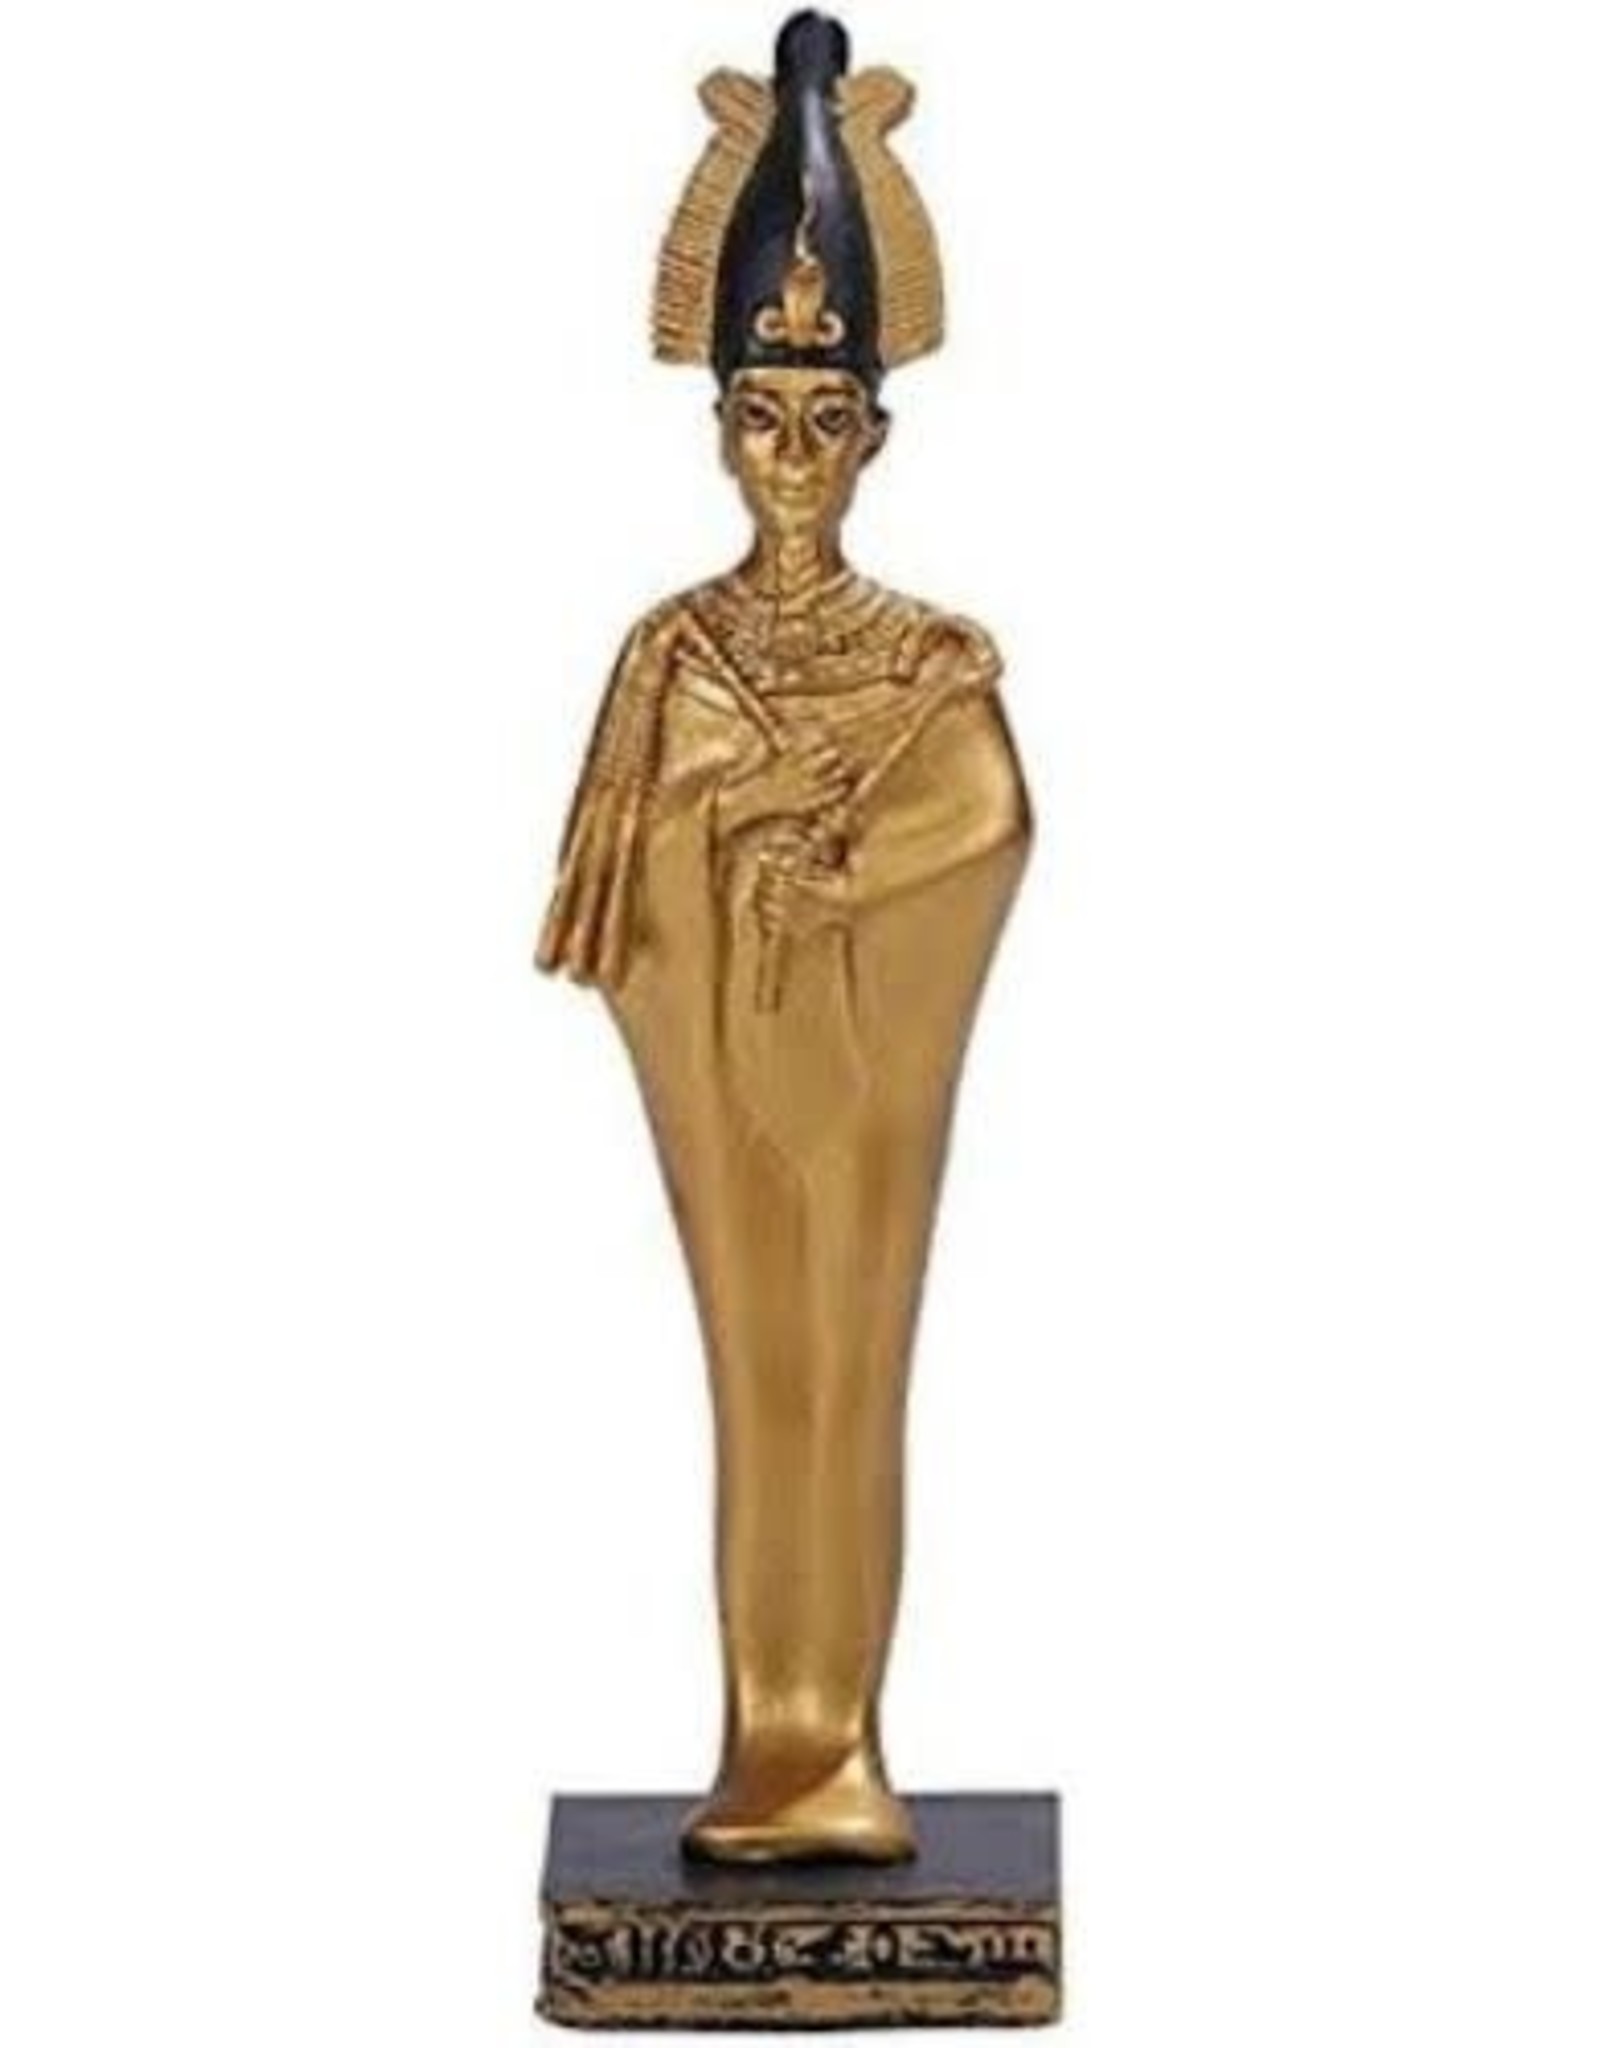 Summit Osiris Statue 1 7/8"x 1 7/8"x 6 1/8" Black&Gold